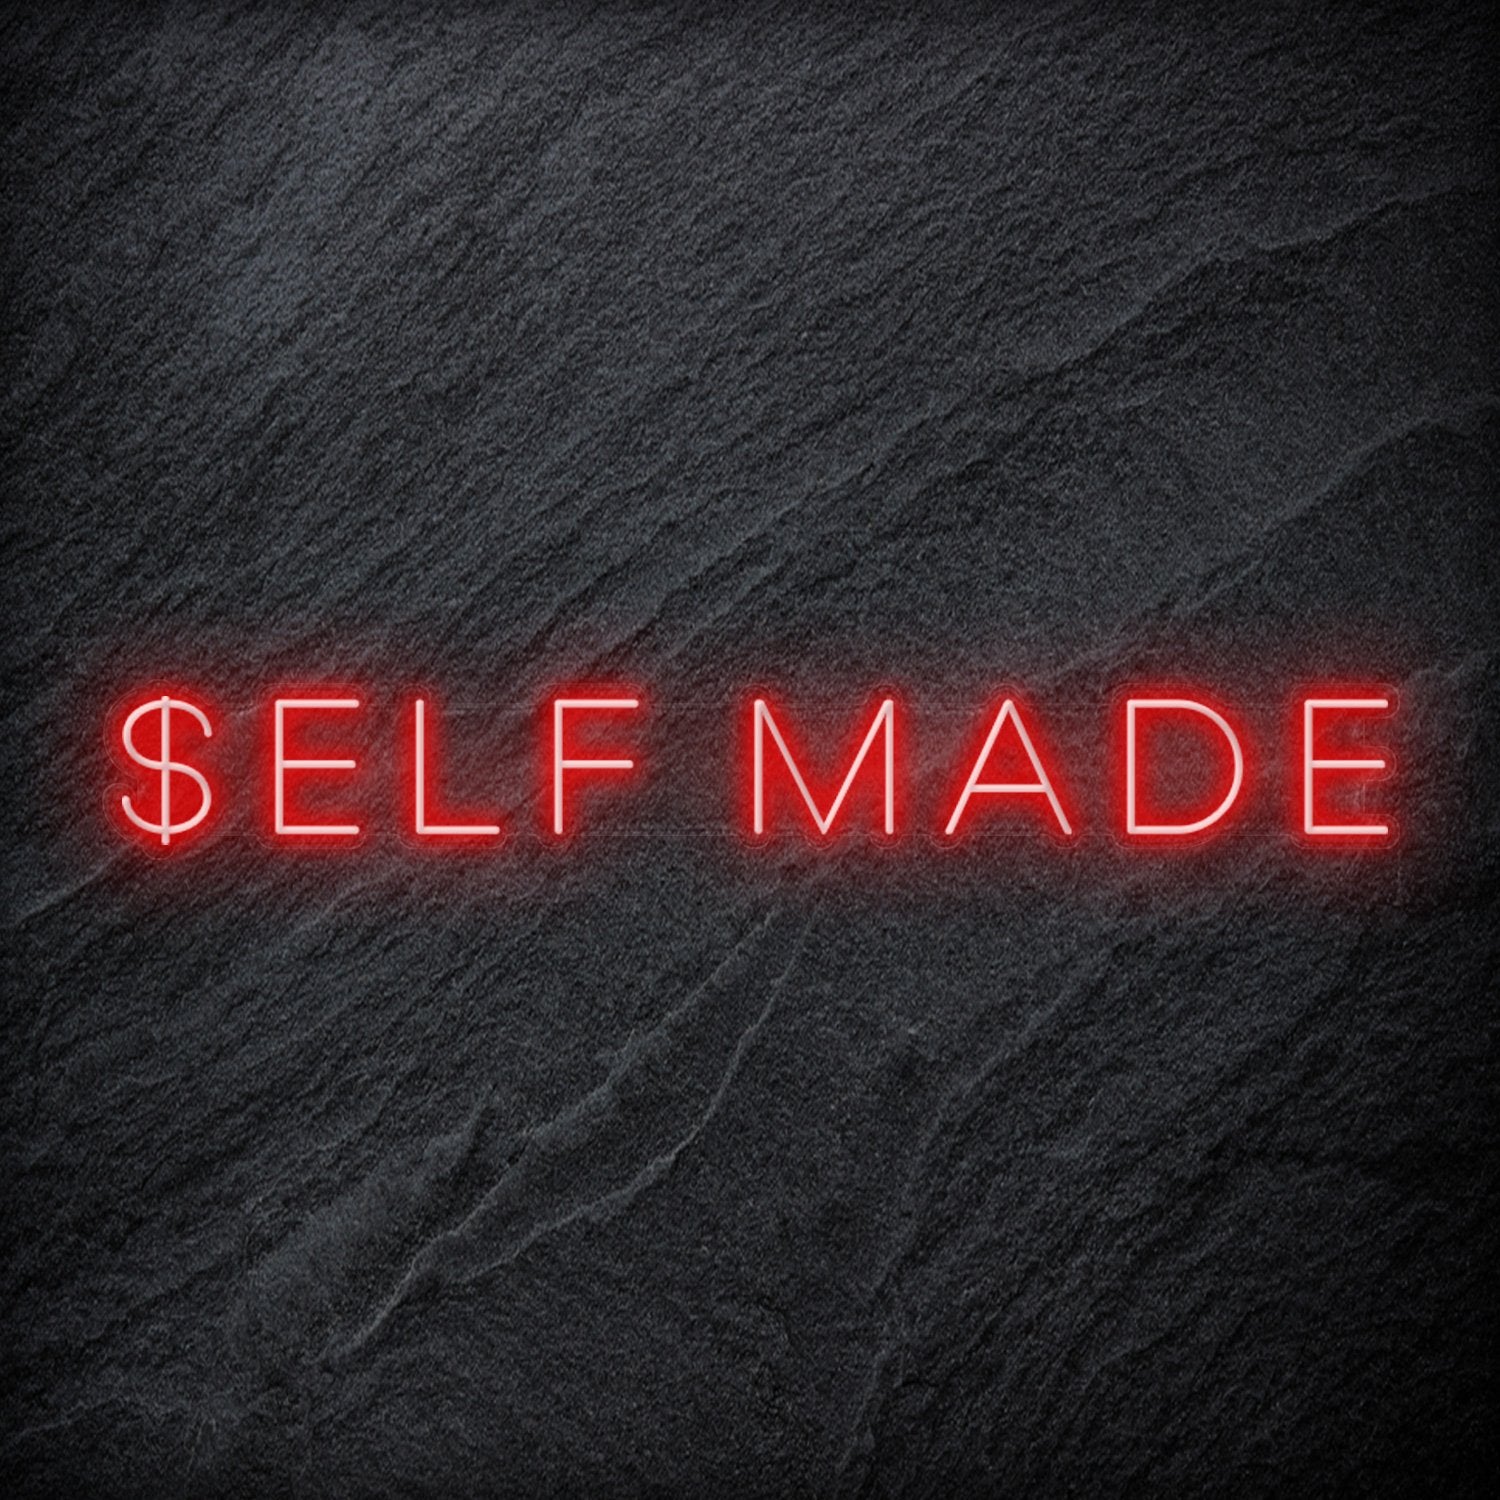 "Self Made" LED Neon Schriftzug Sign - NEONEVERGLOW